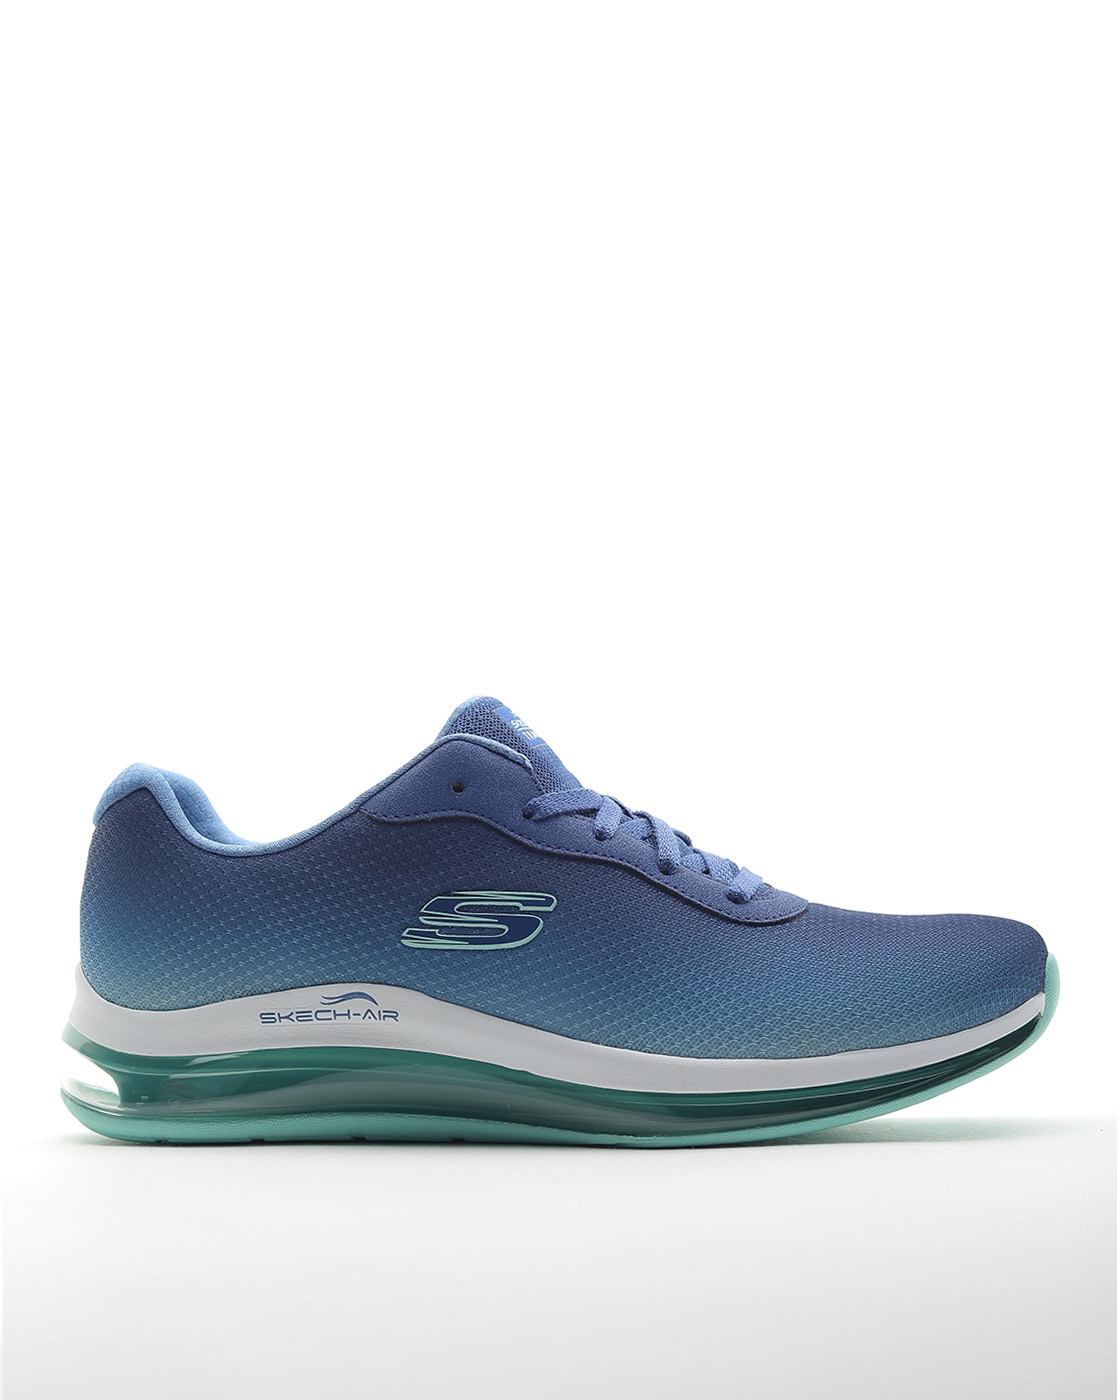 skechers women's skech air element shoes in blue